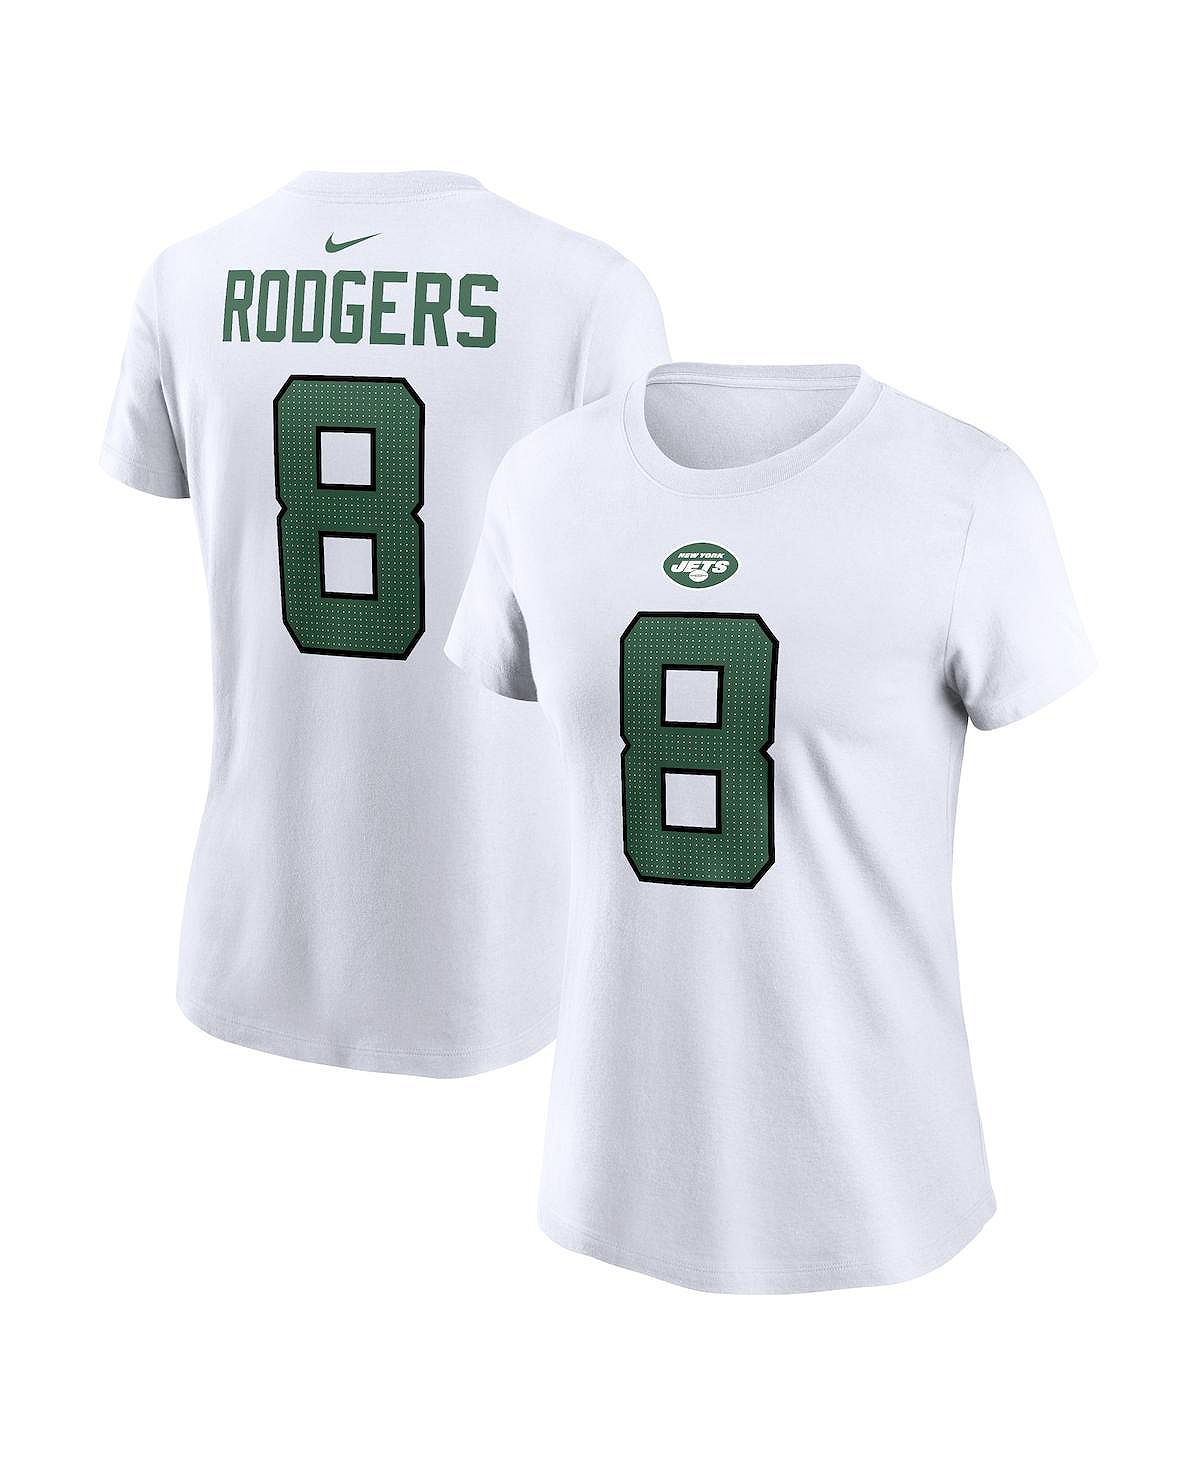 Женская белая футболка Aaron Rodgers New York Jets с именем и номером игрока Nike, белый